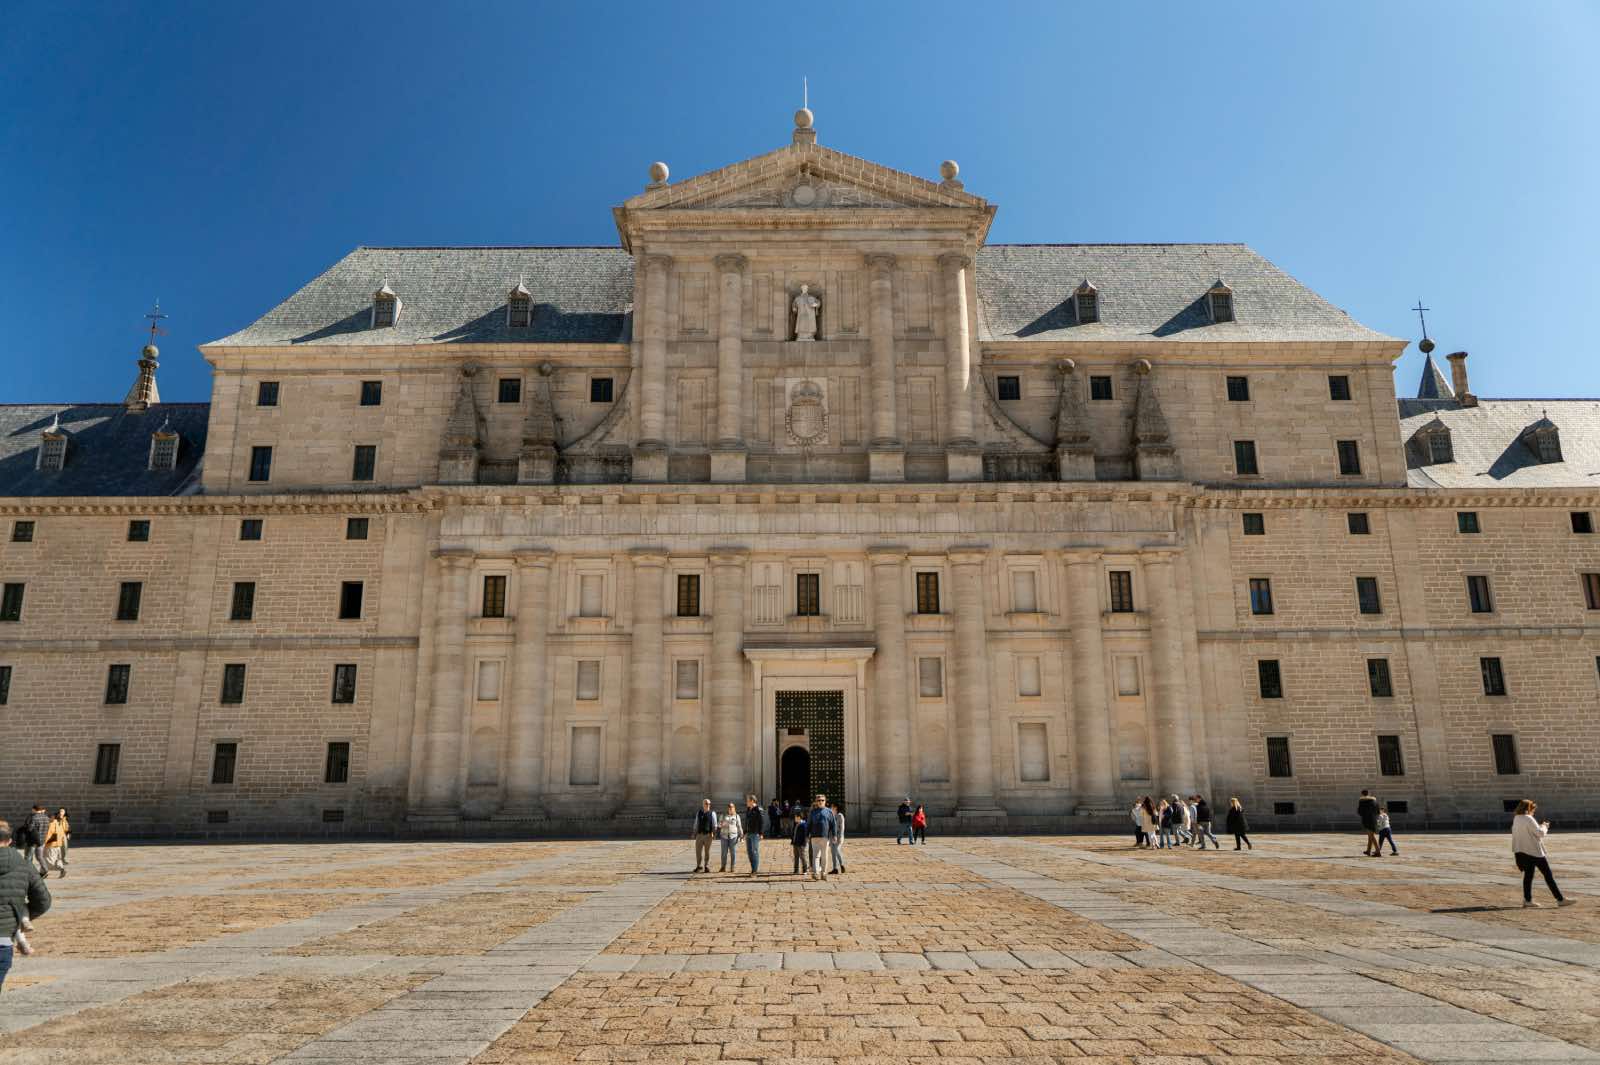 Palacio-Monasterio de El Escorial arquitectura herreriana renacimiento español